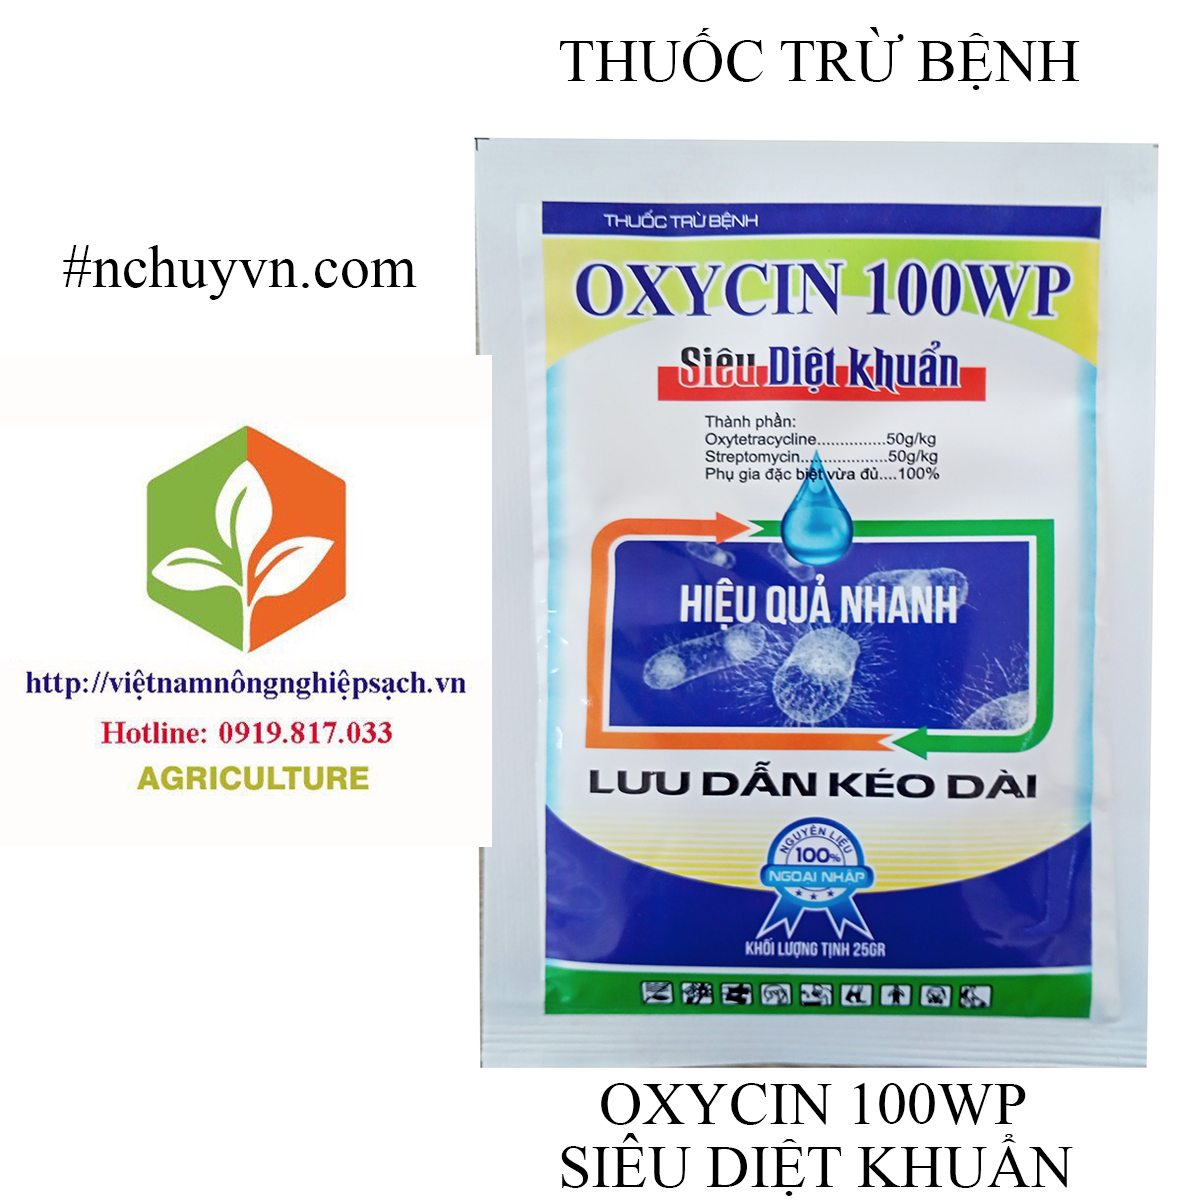 oxy cin